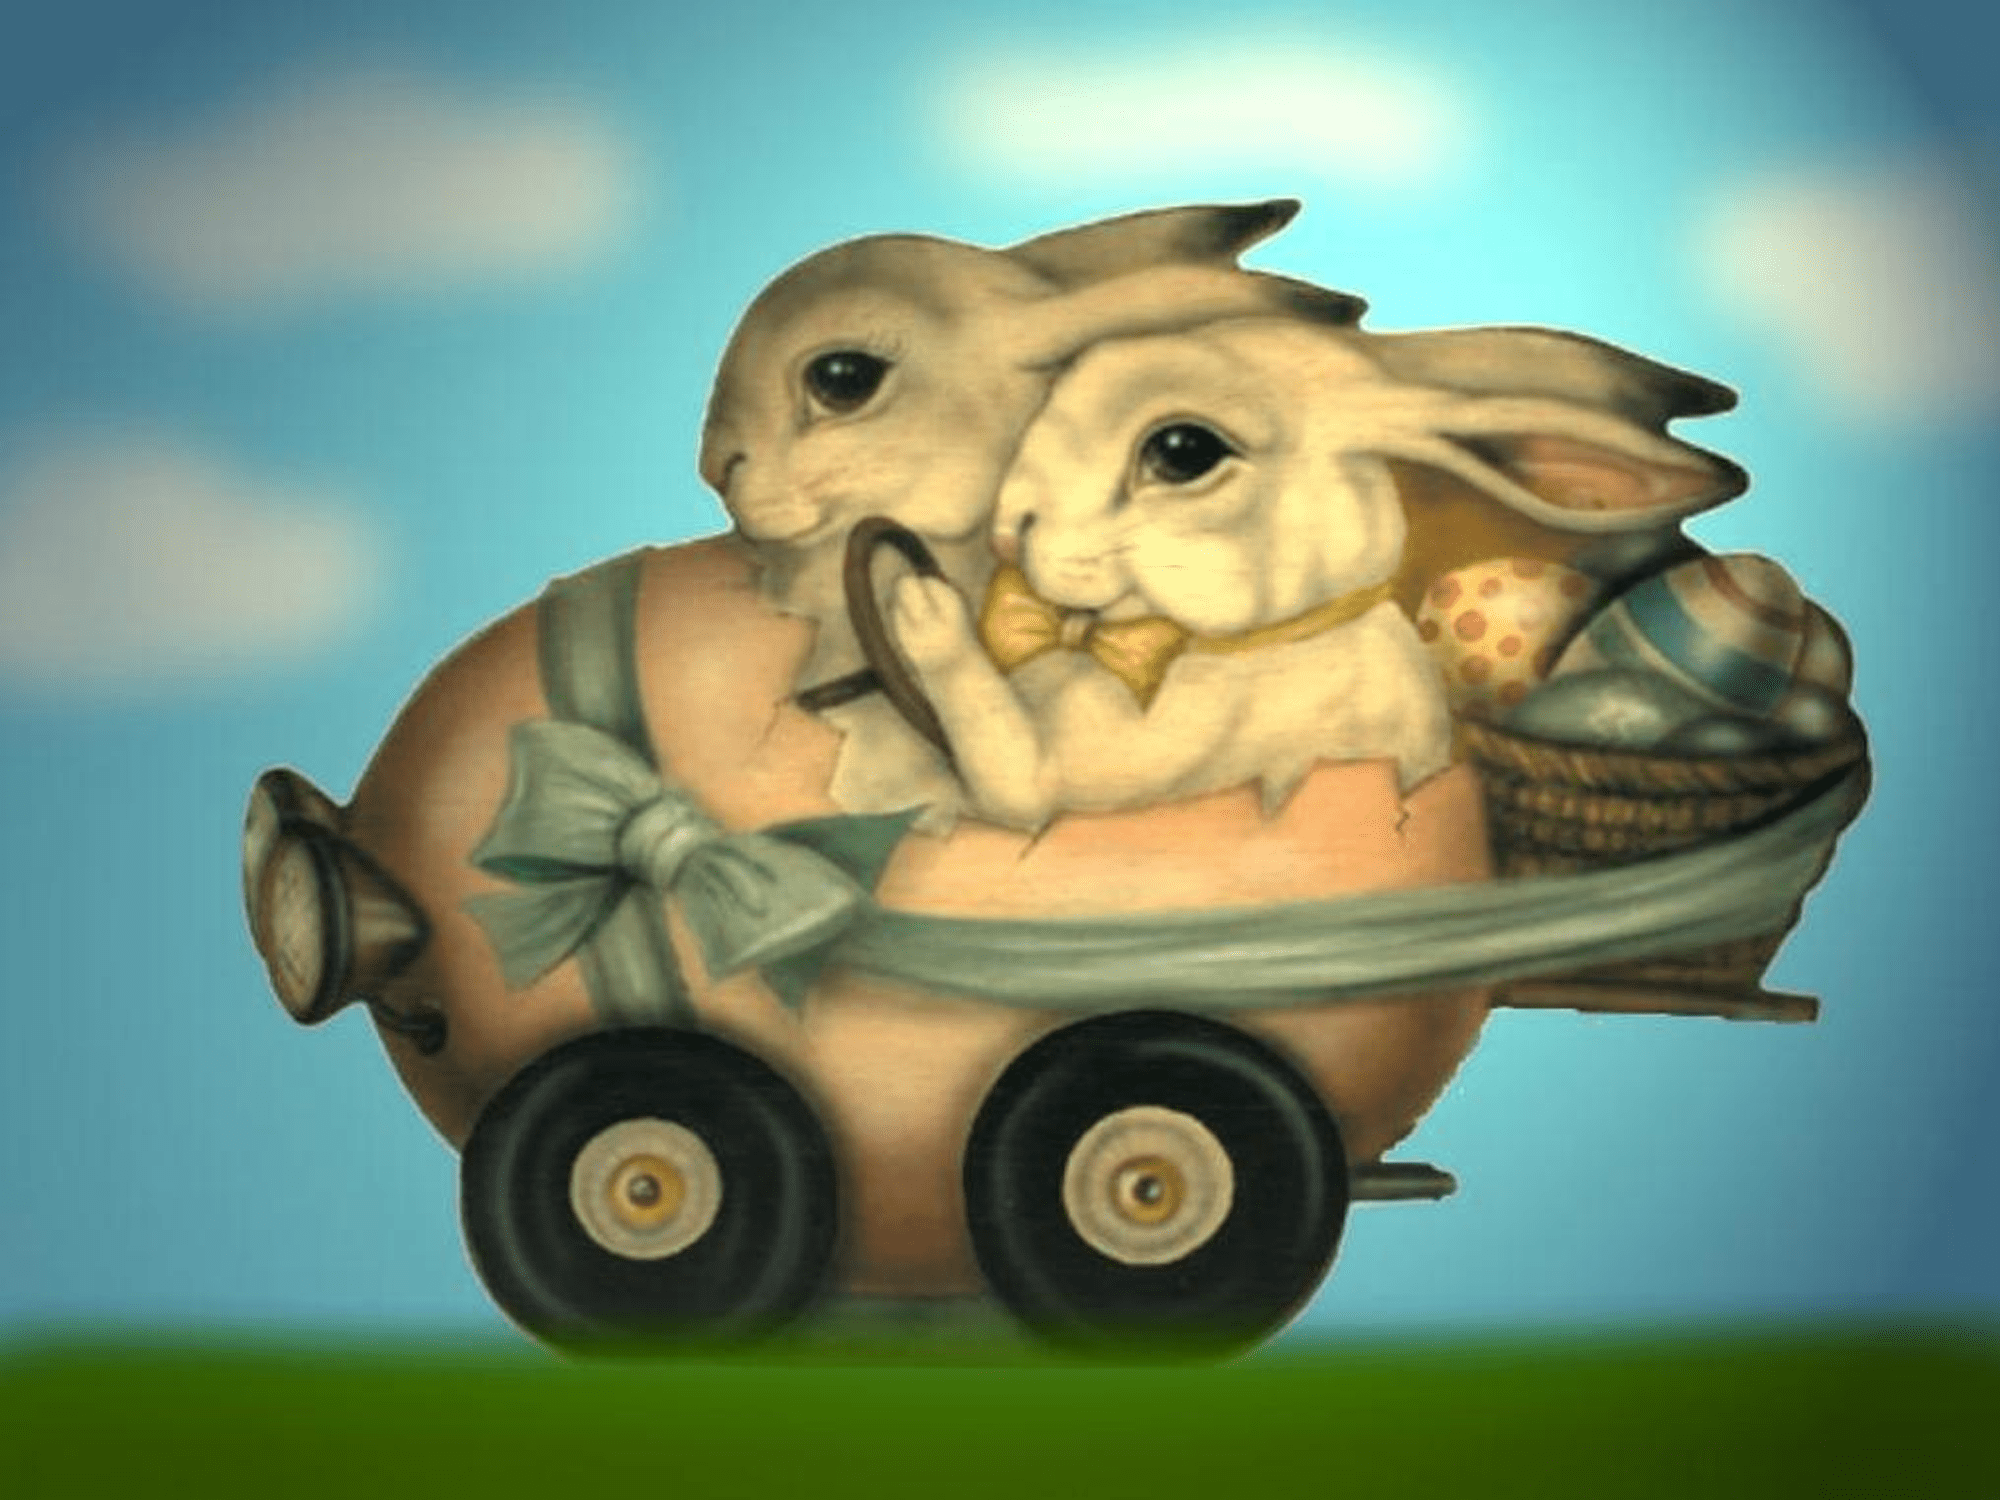 Zdarma velikonoční tapeta ze dvou králíků, kteří řídí vejce